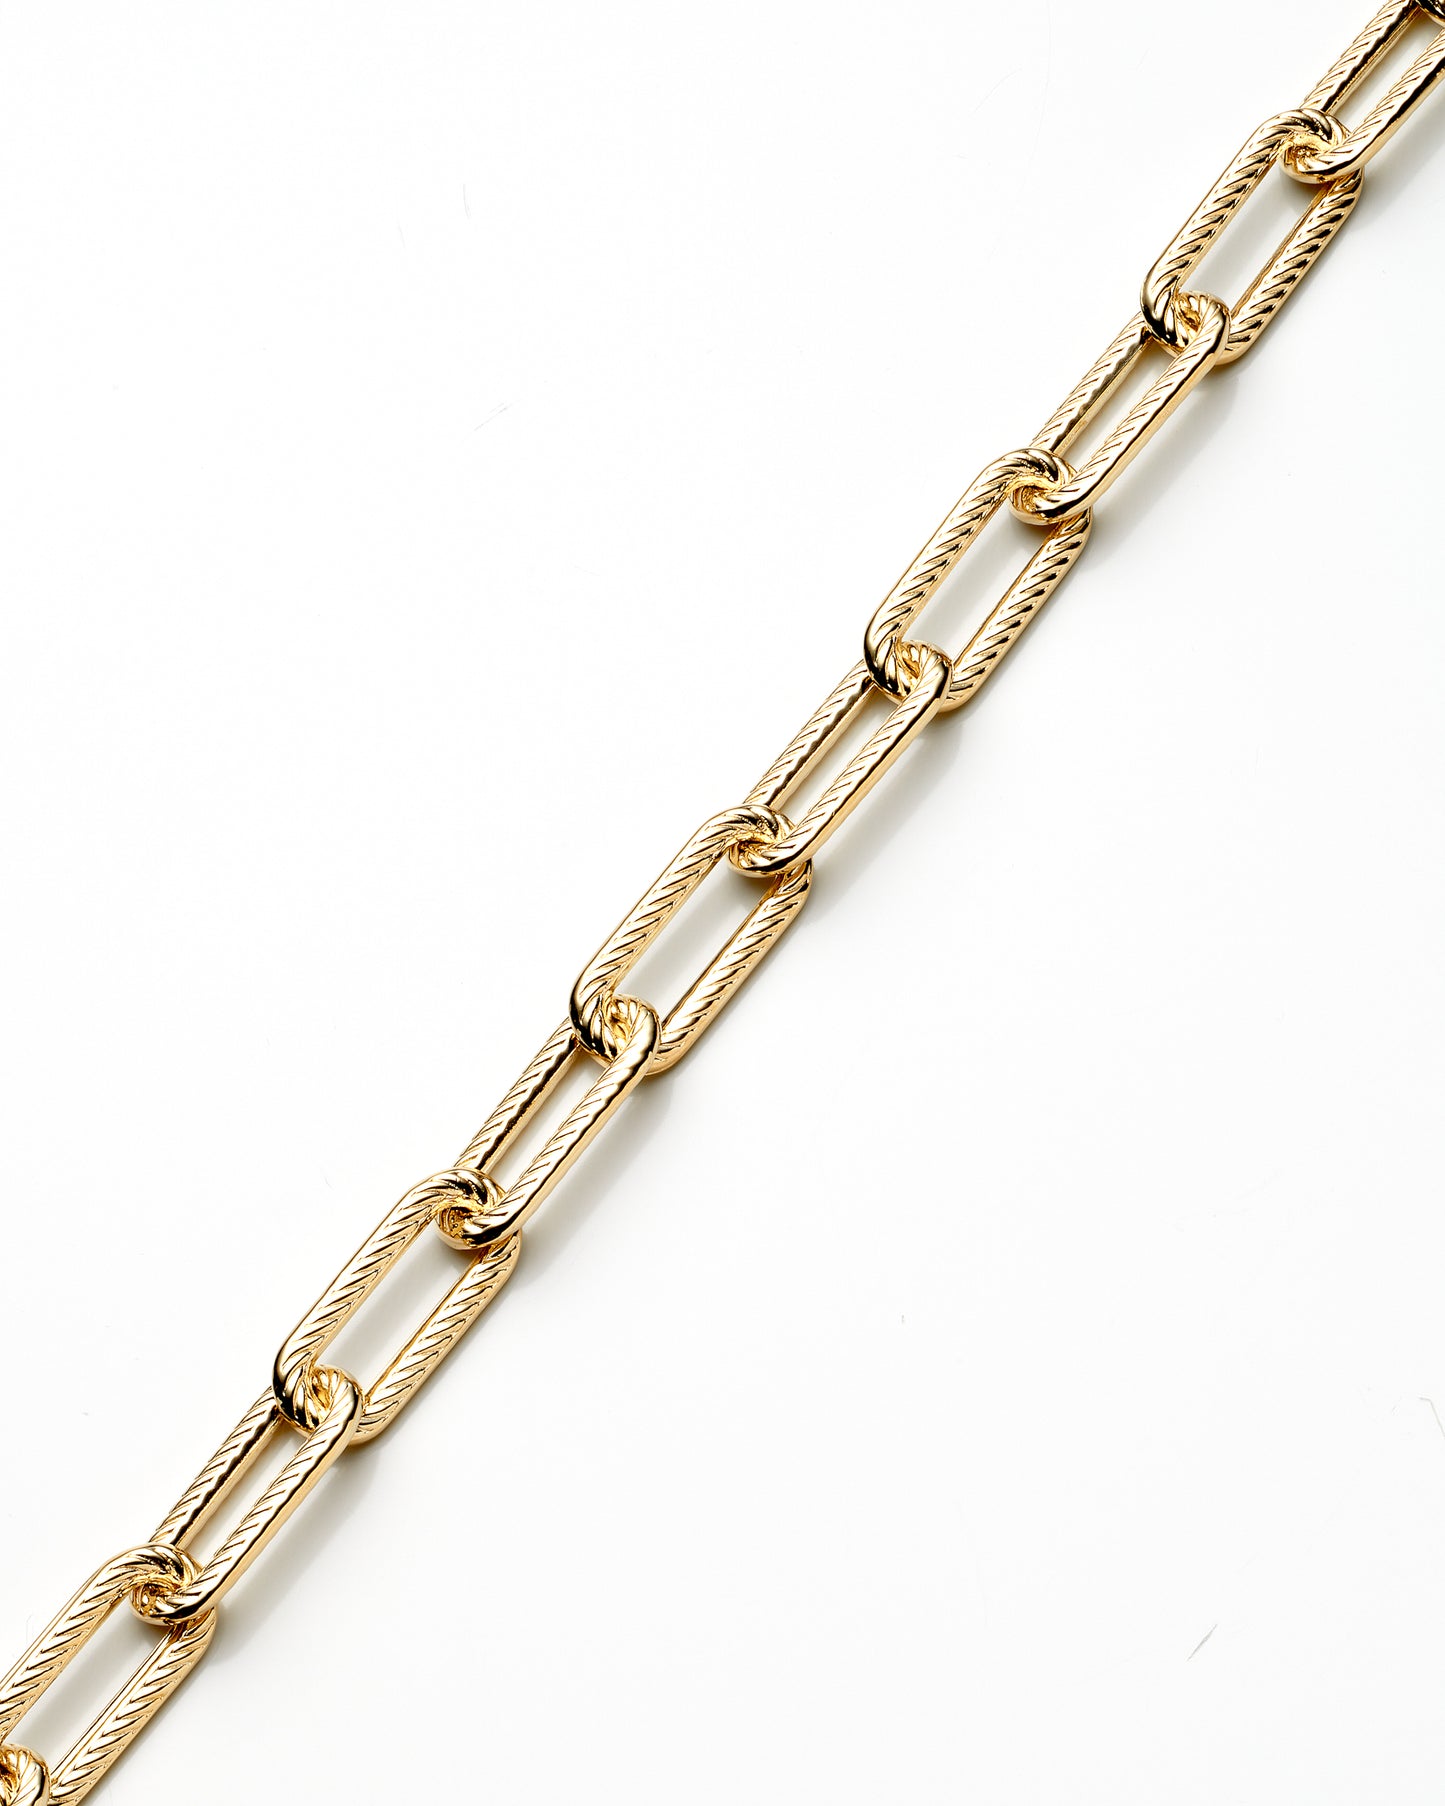 14K Yellow Gold Fancy Paper Clip Style Link Bracelet 6Mm 7.5In 4.1Dwt